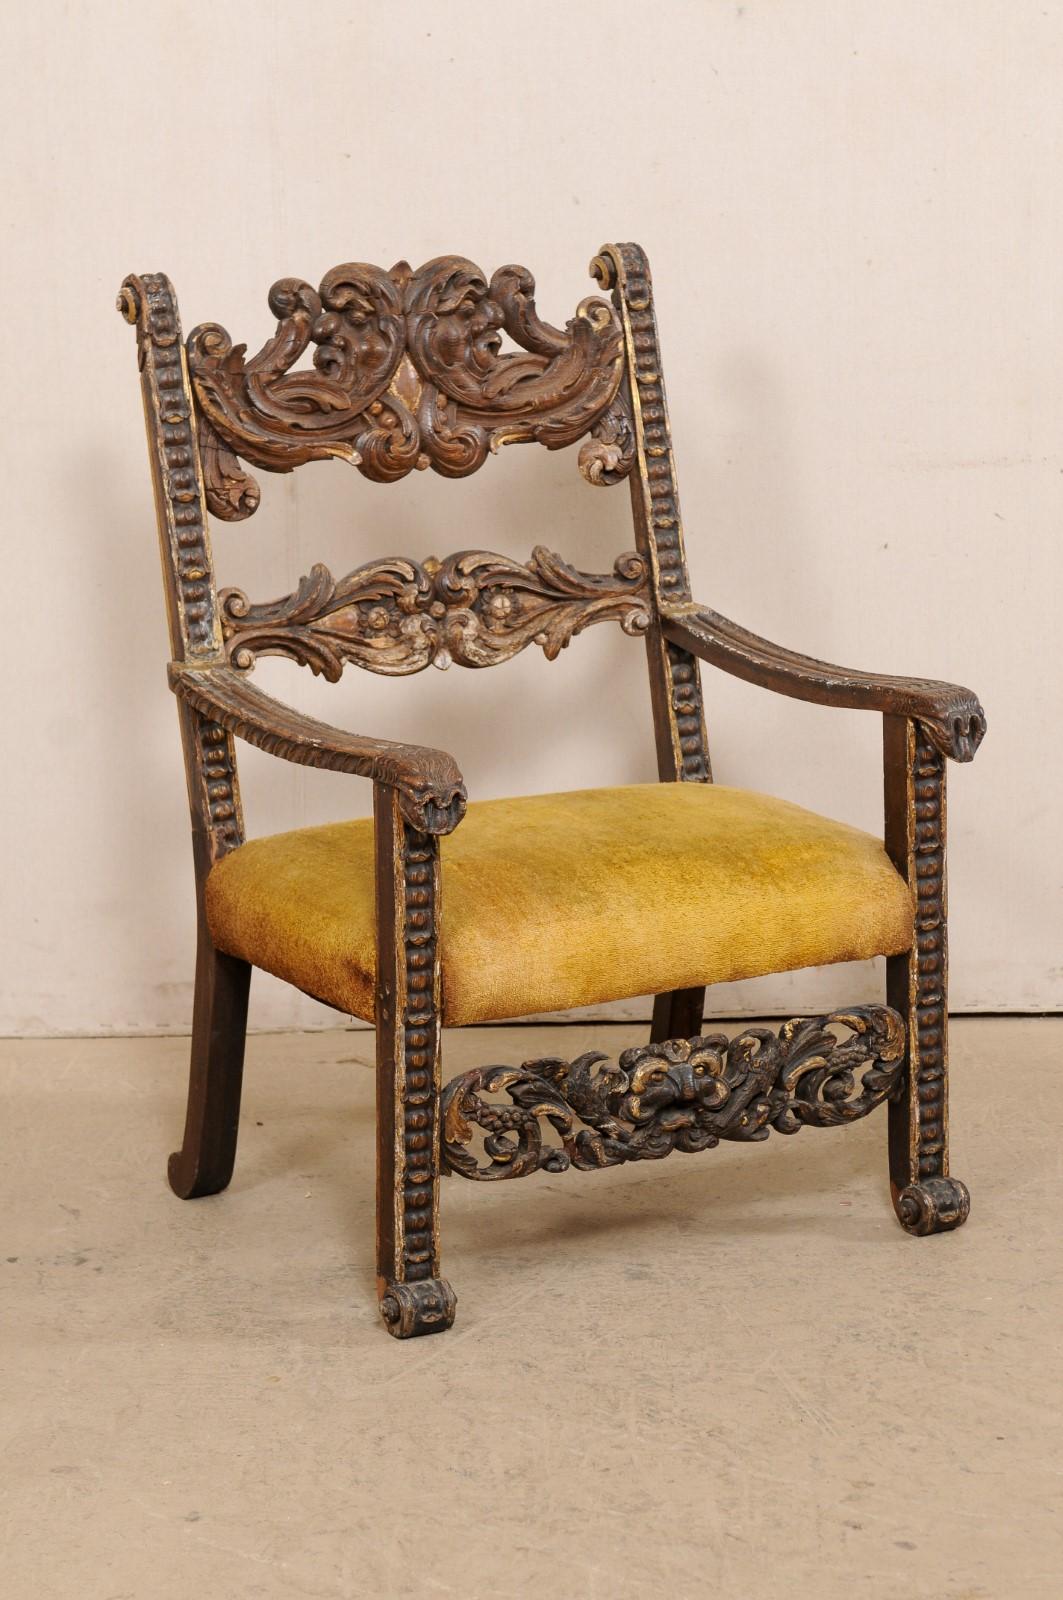 Fauteuil baroque italien en bois sculpté du XVIIIe siècle, peut-être plus ancien. Cette chaise ancienne d'Italie est méticuleusement sculptée à la main, en particulier le long des dossiers et des traverses avant, avec un motif de feuilles d'acanthe.